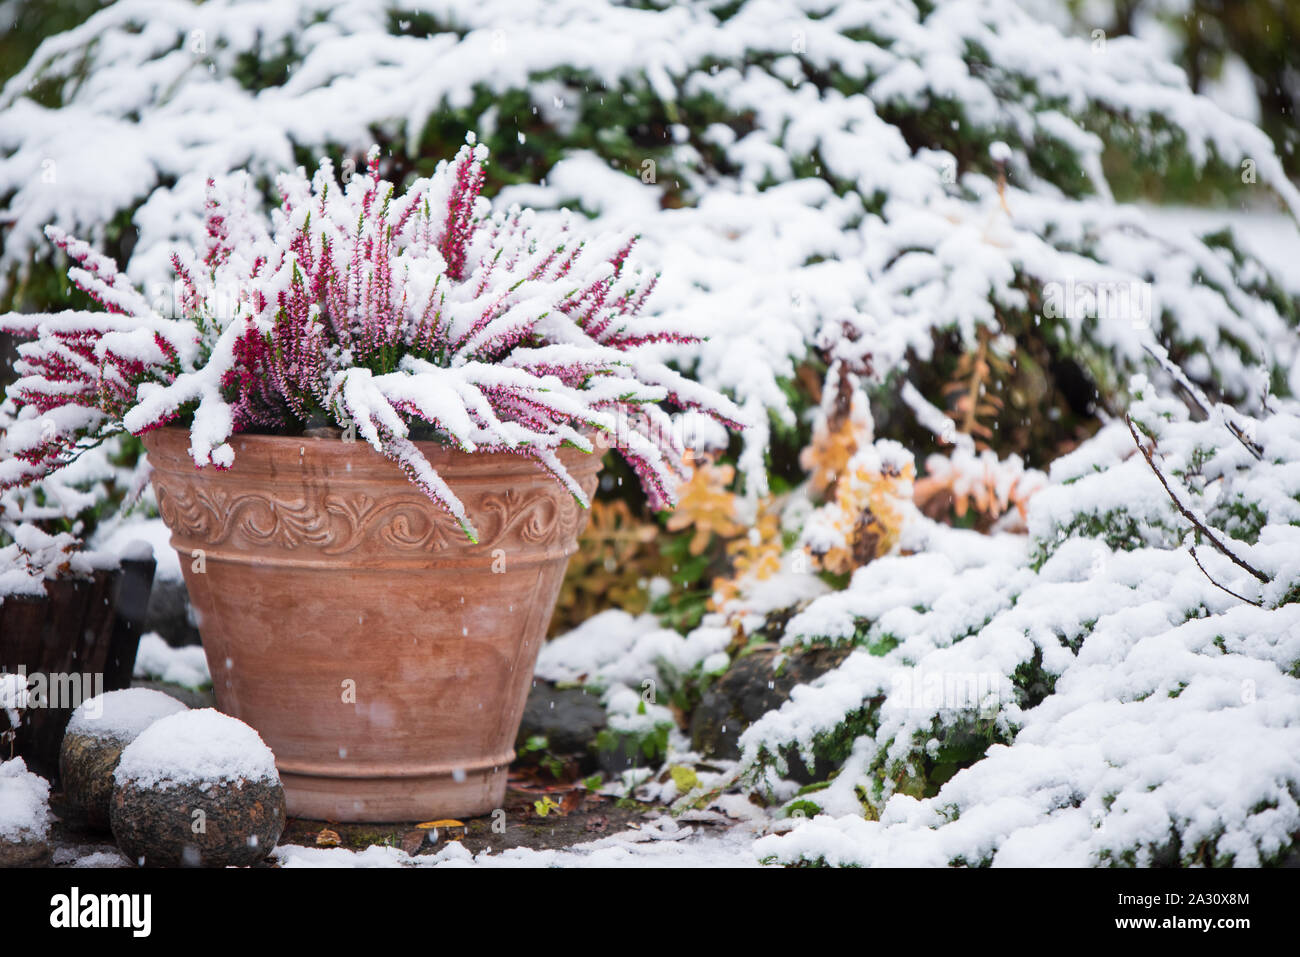 Gemeinsame Heather, Calluna vulgaris, im Blumentopf mit Schnee bedeckt, immergrüne Wacholder im Hintergrund, verschneiten Garten im Winter Stockfoto